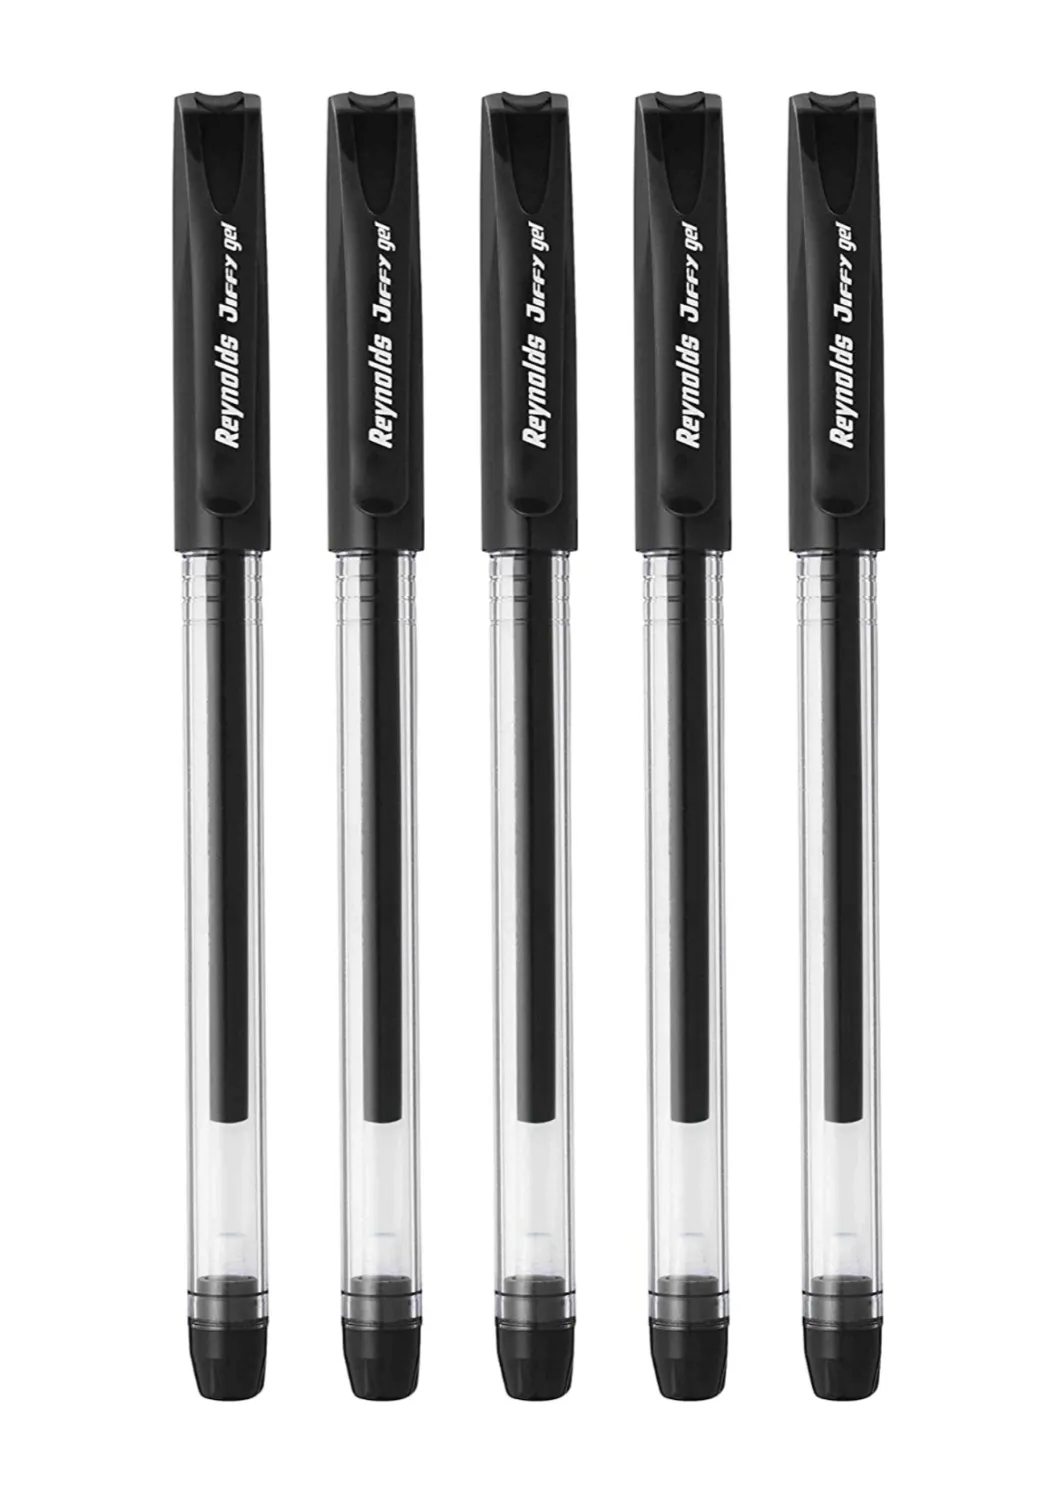 Reynolds Jiffy 0.5 mm Needle Point Gel Pens - Pack of 5 (Black)